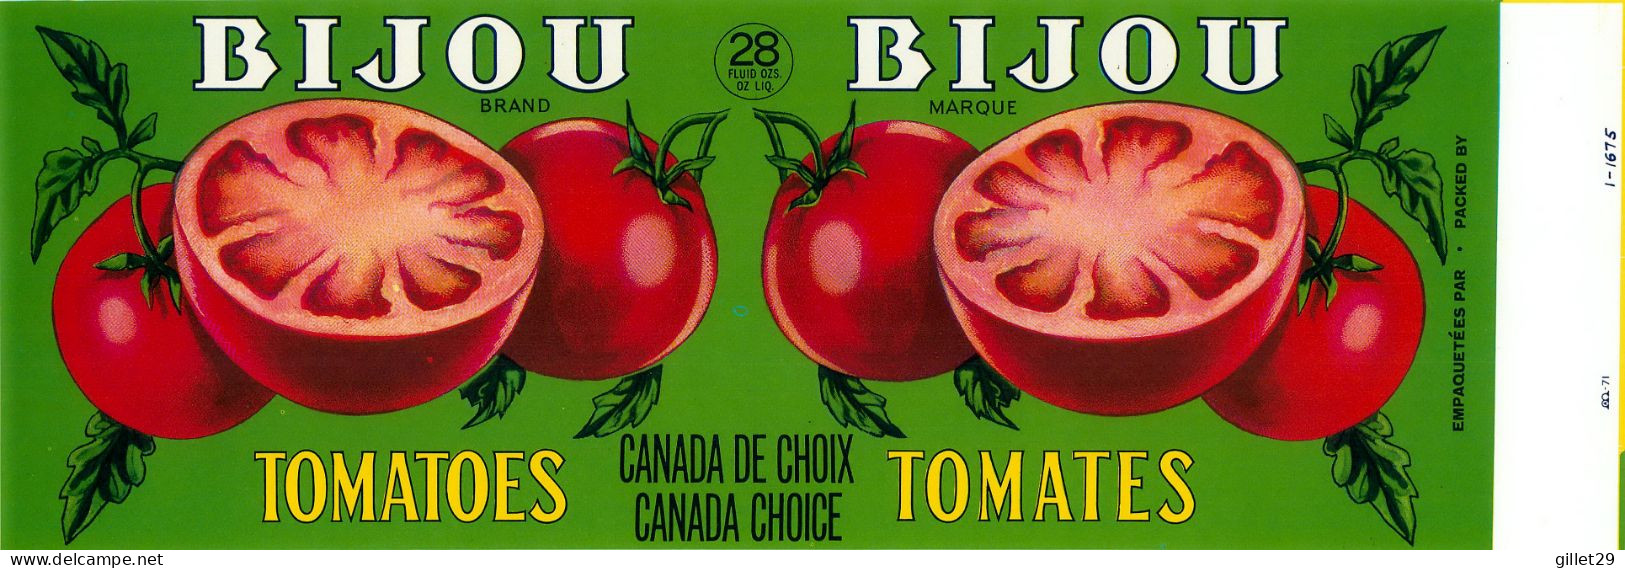 ÉTIQUETTES - BIJOU BRAND TOMATOES - BIJOU MARQUE TOMATES - - 28 OZS CANADA - DIMENSION 11 X 33 Cm - - Fruits Et Légumes